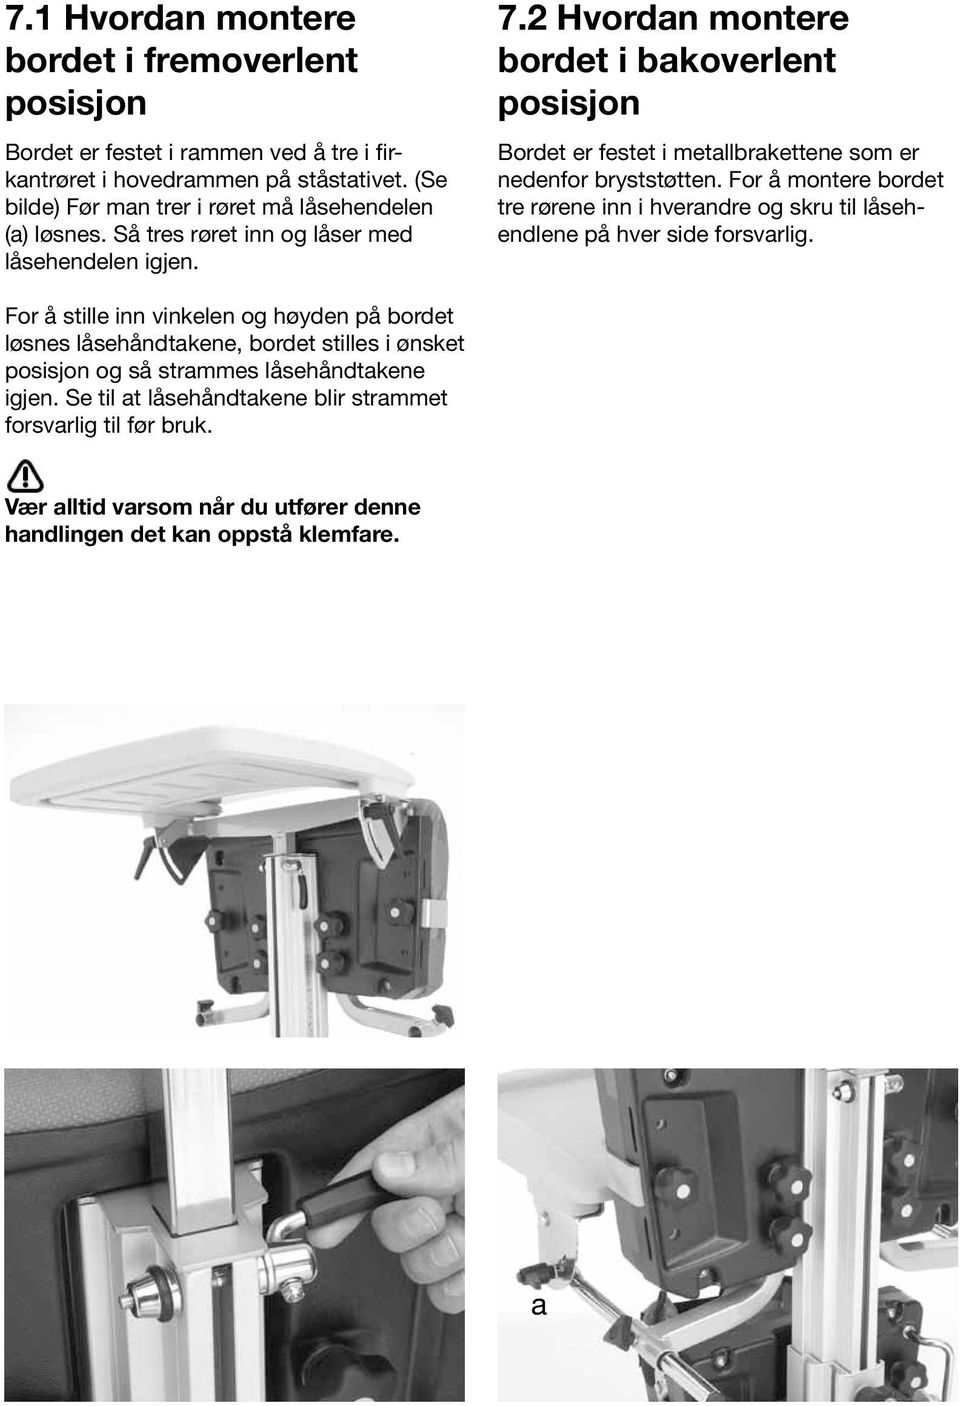 2 Hvordan montere bordet i bakoverlent posisjon Bordet er festet i metallbrakettene som er nedenfor bryststøtten.